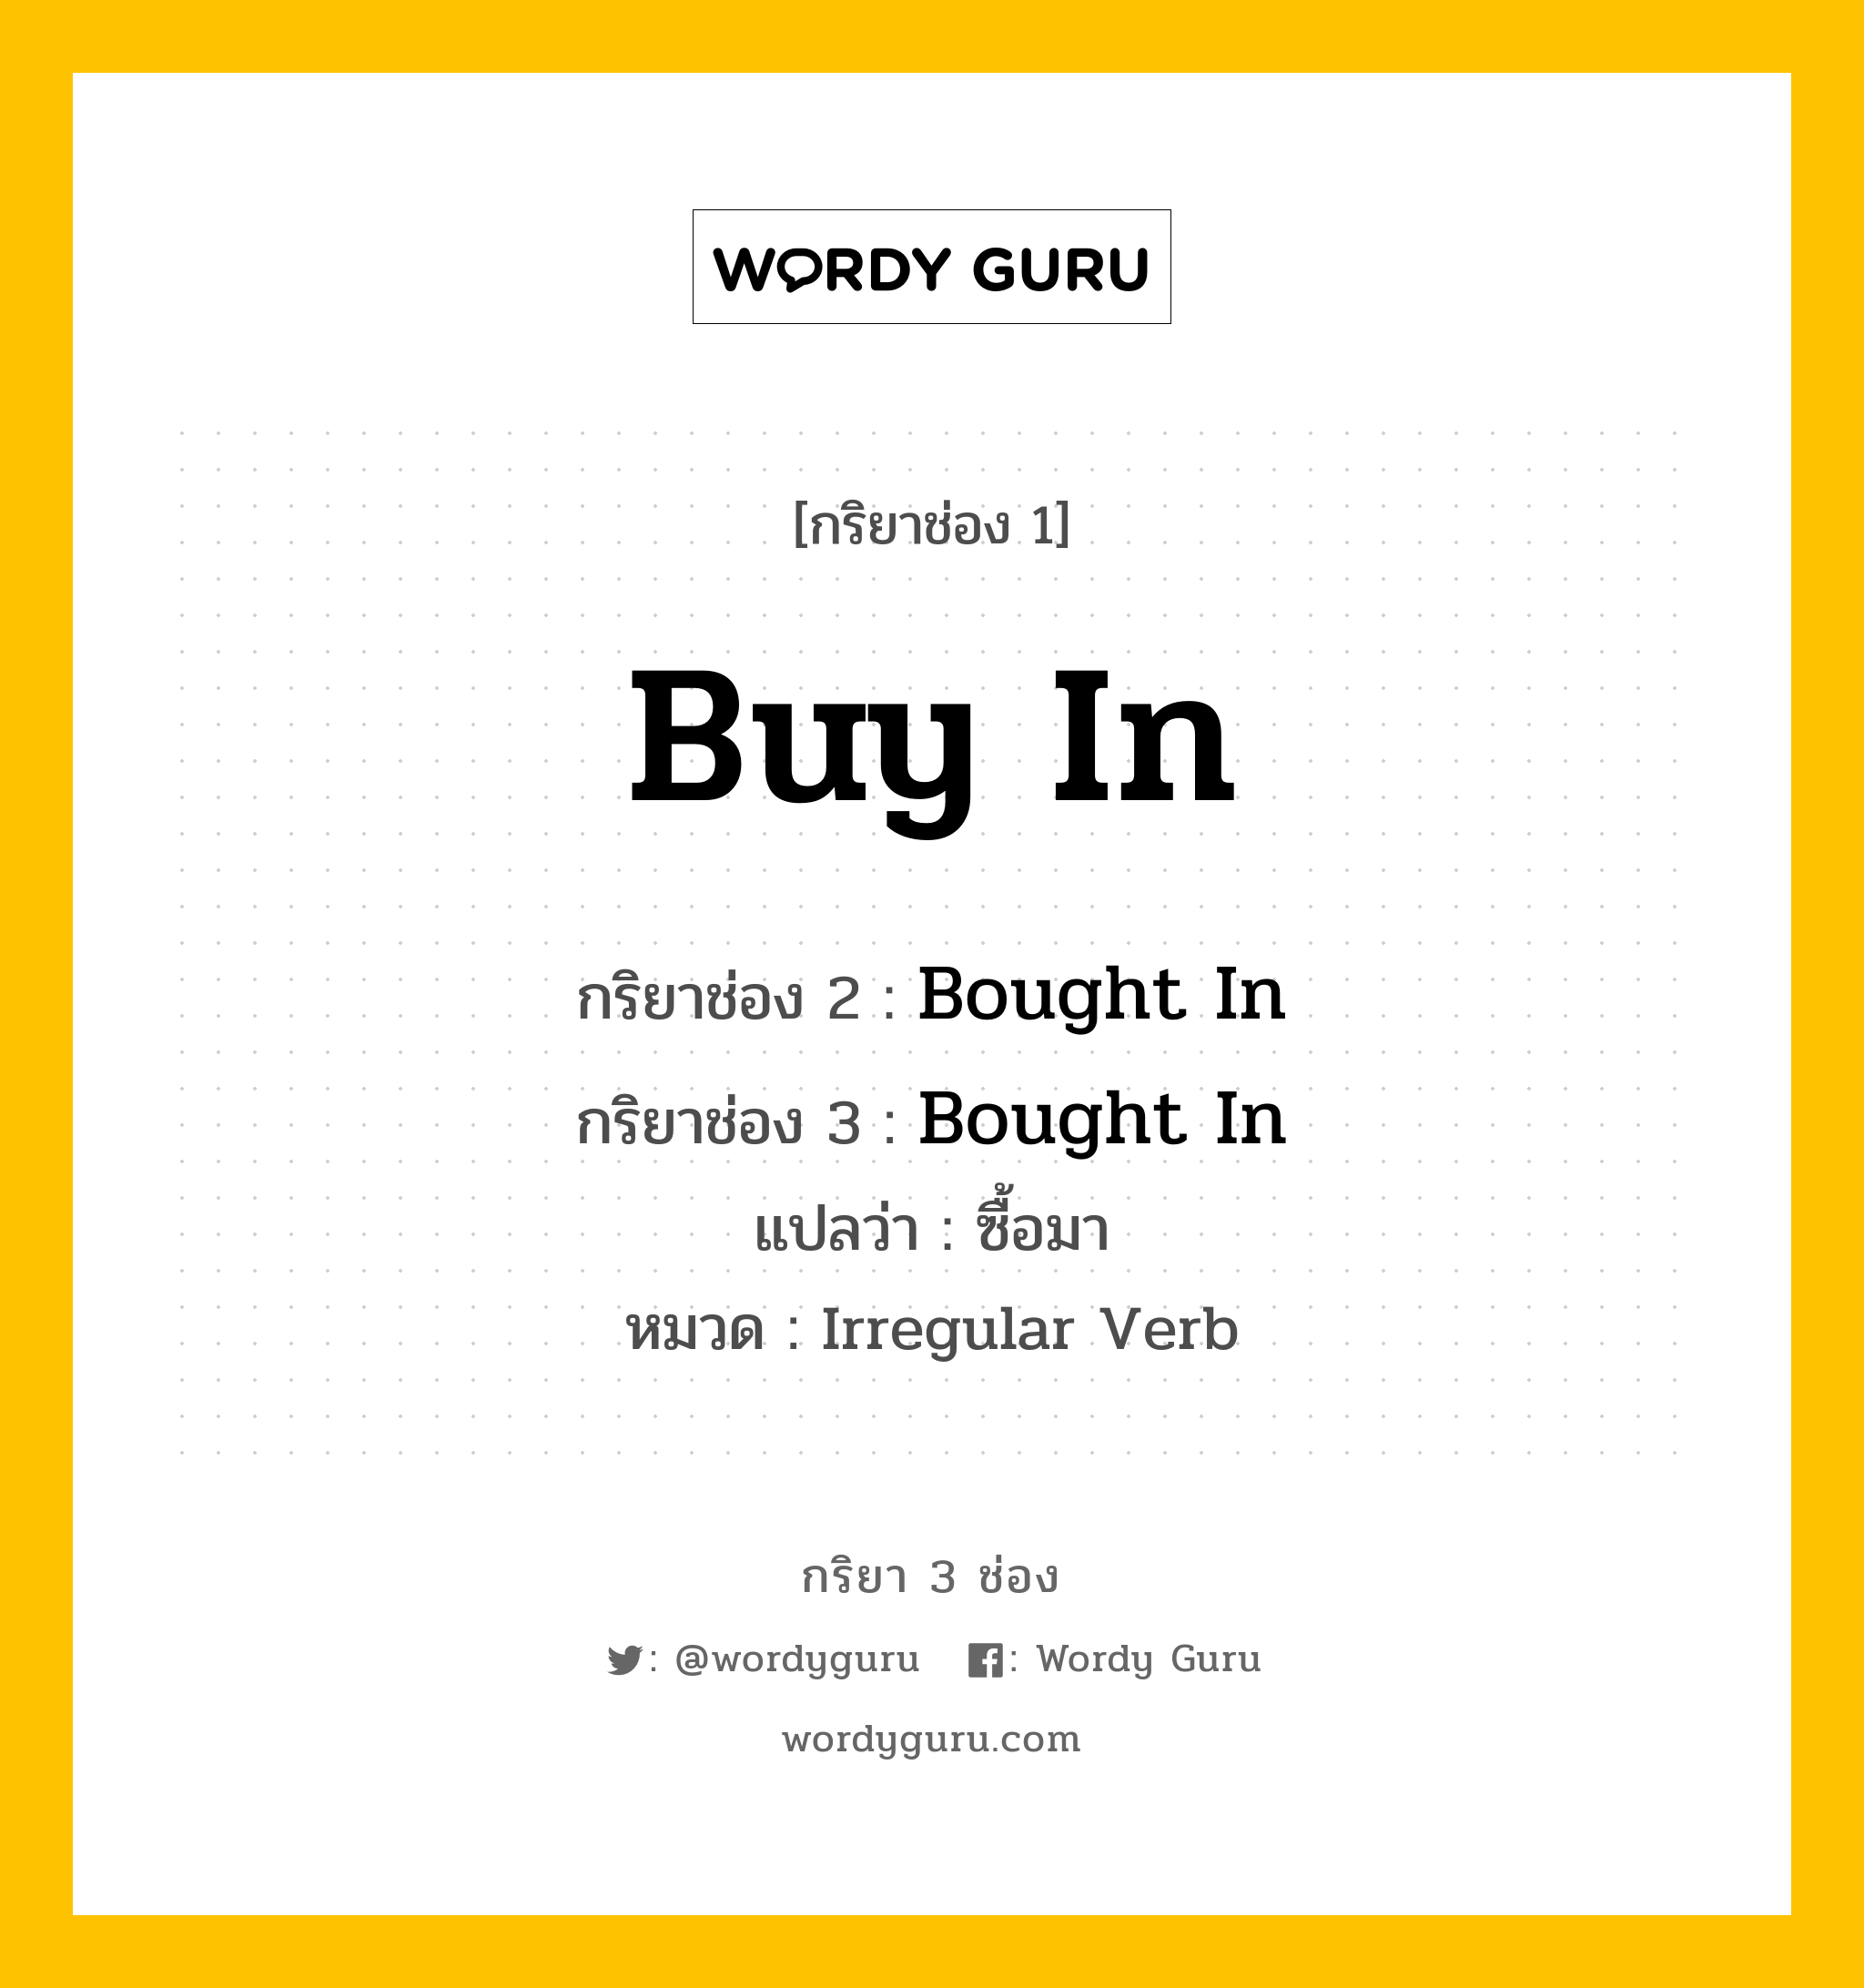 กริยา 3 ช่อง: Buy In ช่อง 2 Buy In ช่อง 3 คืออะไร, กริยาช่อง 1 Buy In กริยาช่อง 2 Bought In กริยาช่อง 3 Bought In แปลว่า ซื้อมา หมวด Irregular Verb หมวด Irregular Verb